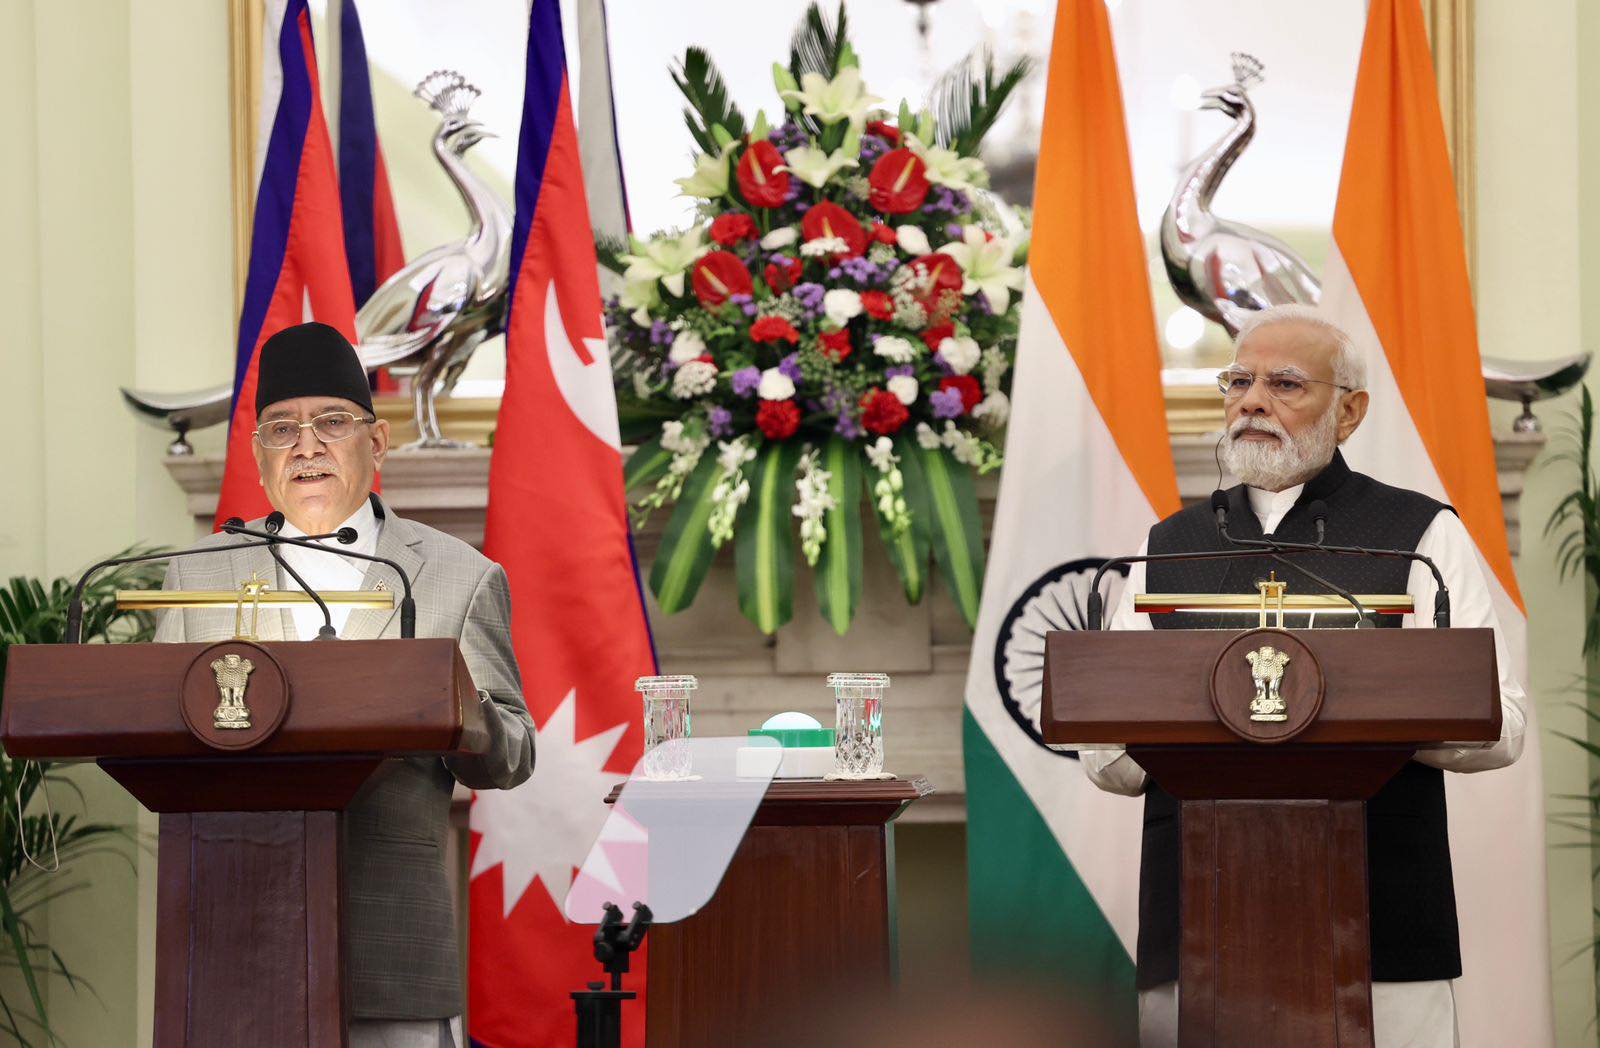 नेपाल-भारत प्रधानमन्त्रीस्तरीय सहमति कार्यान्वयन भएन, सरकार भन्छ- ‘सहकार्यमा काम हुँदै’